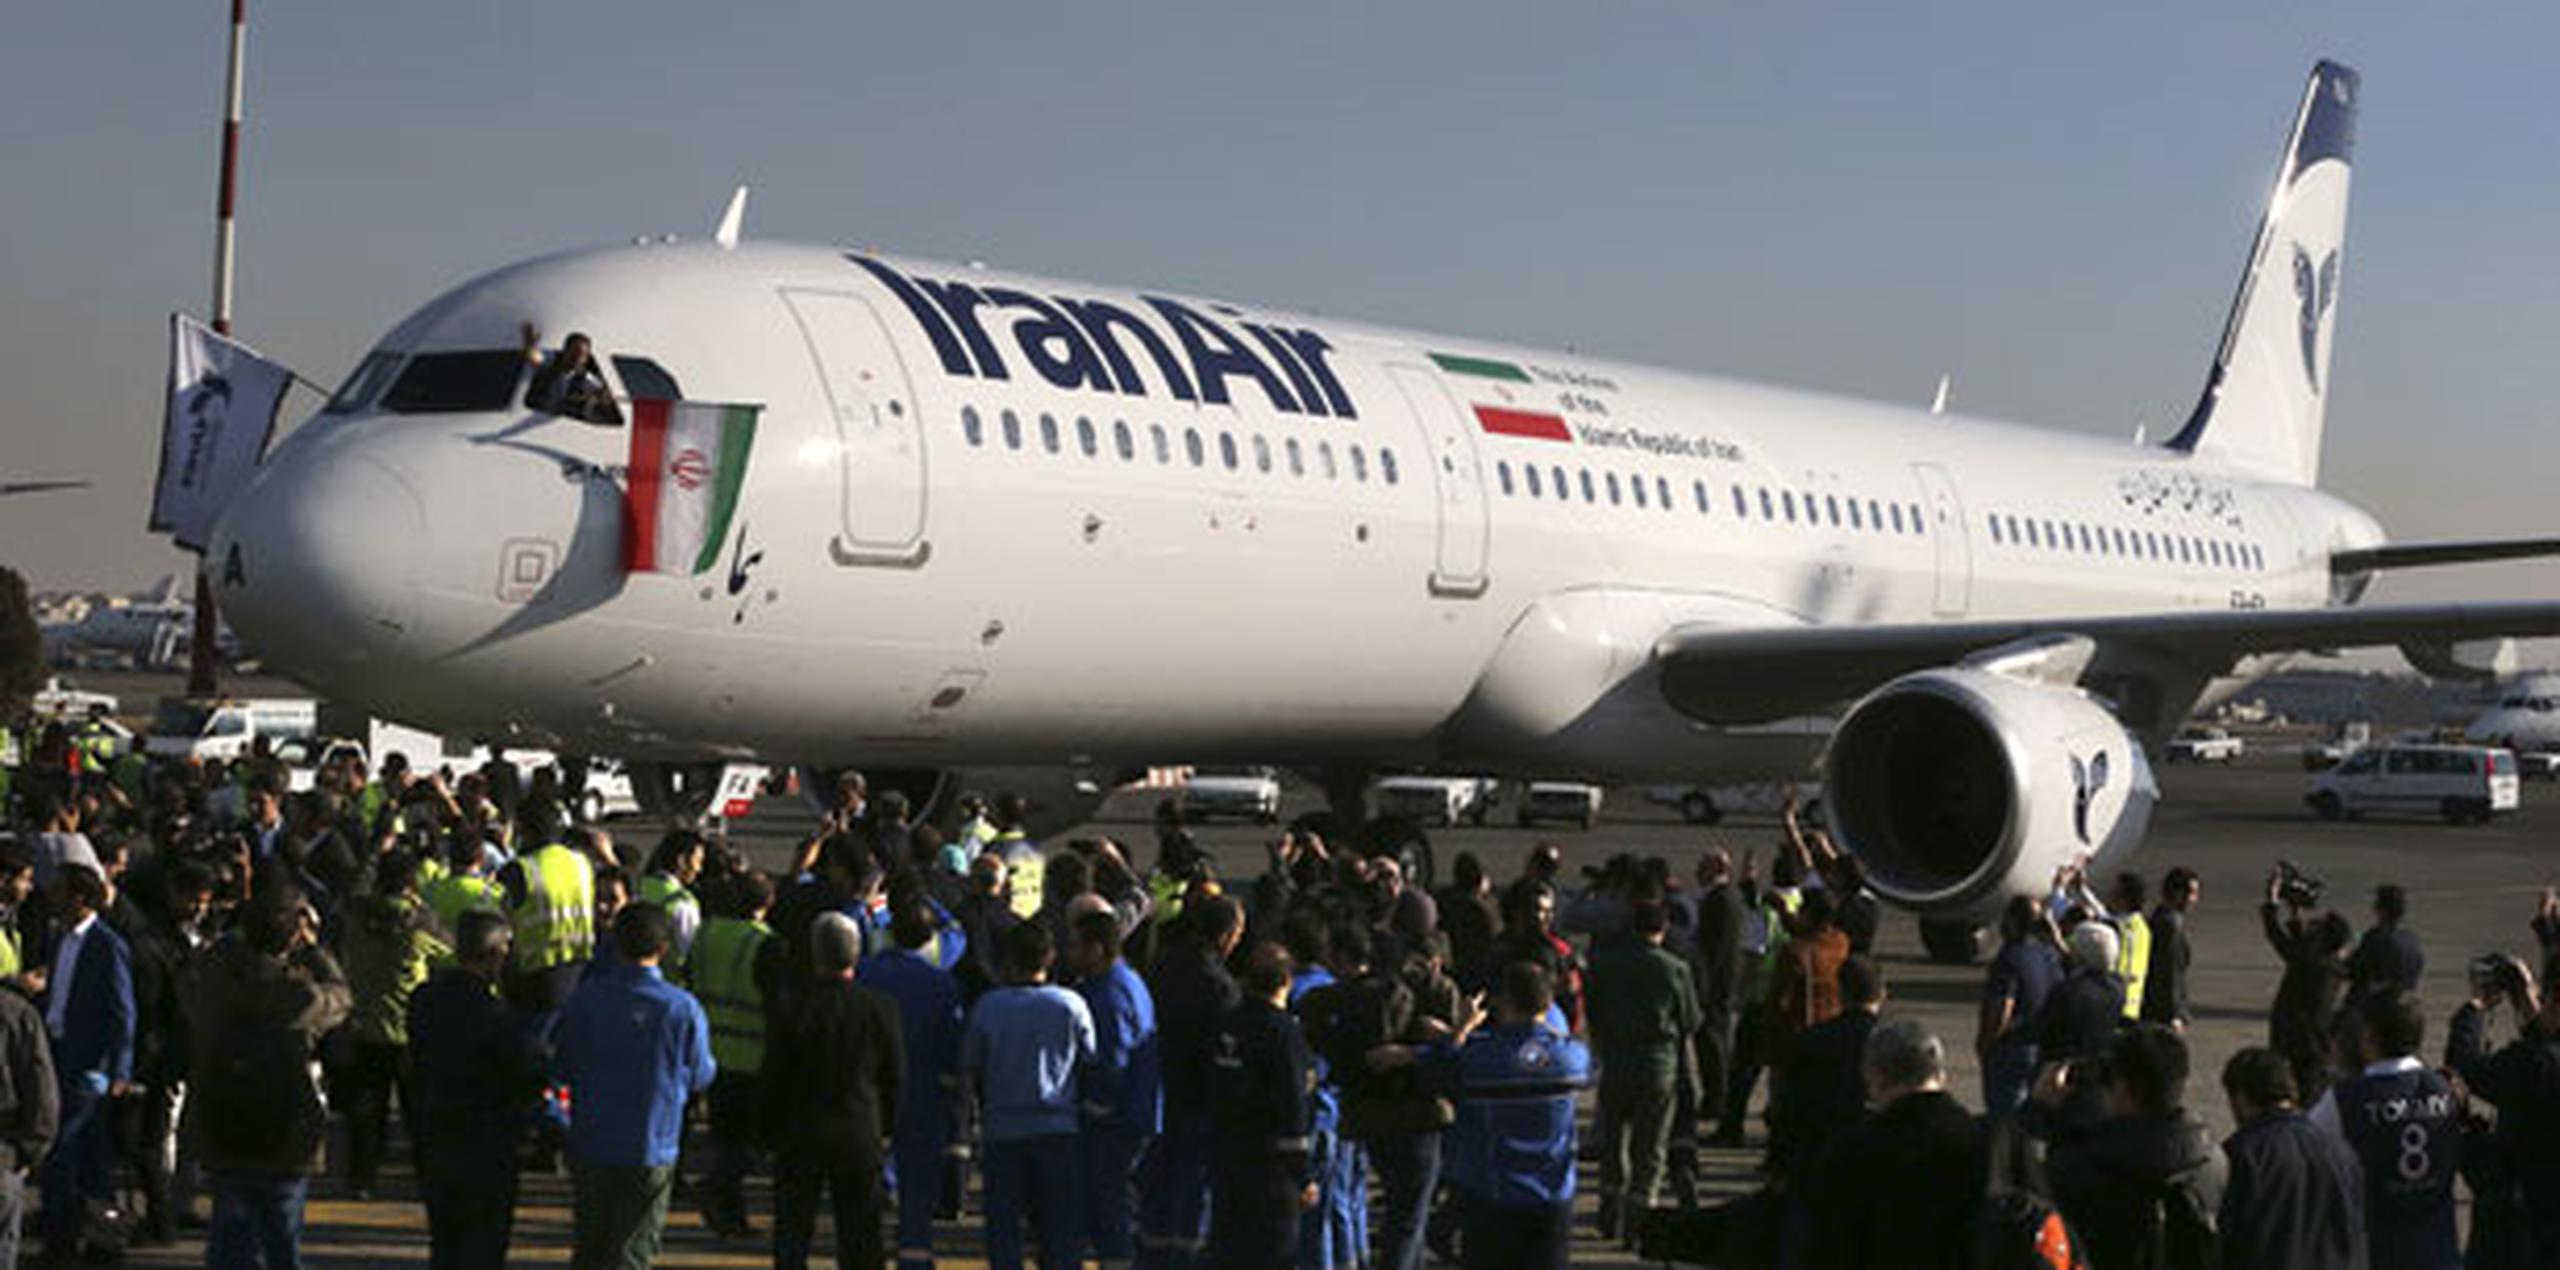 En diciembre del 2016, Airbus Group firmó un acuerdo con la aerolínea nacional de Irán, IranAir, para venderle 100 aviones por alrededor de 19,000 millones de dólares. (AP)